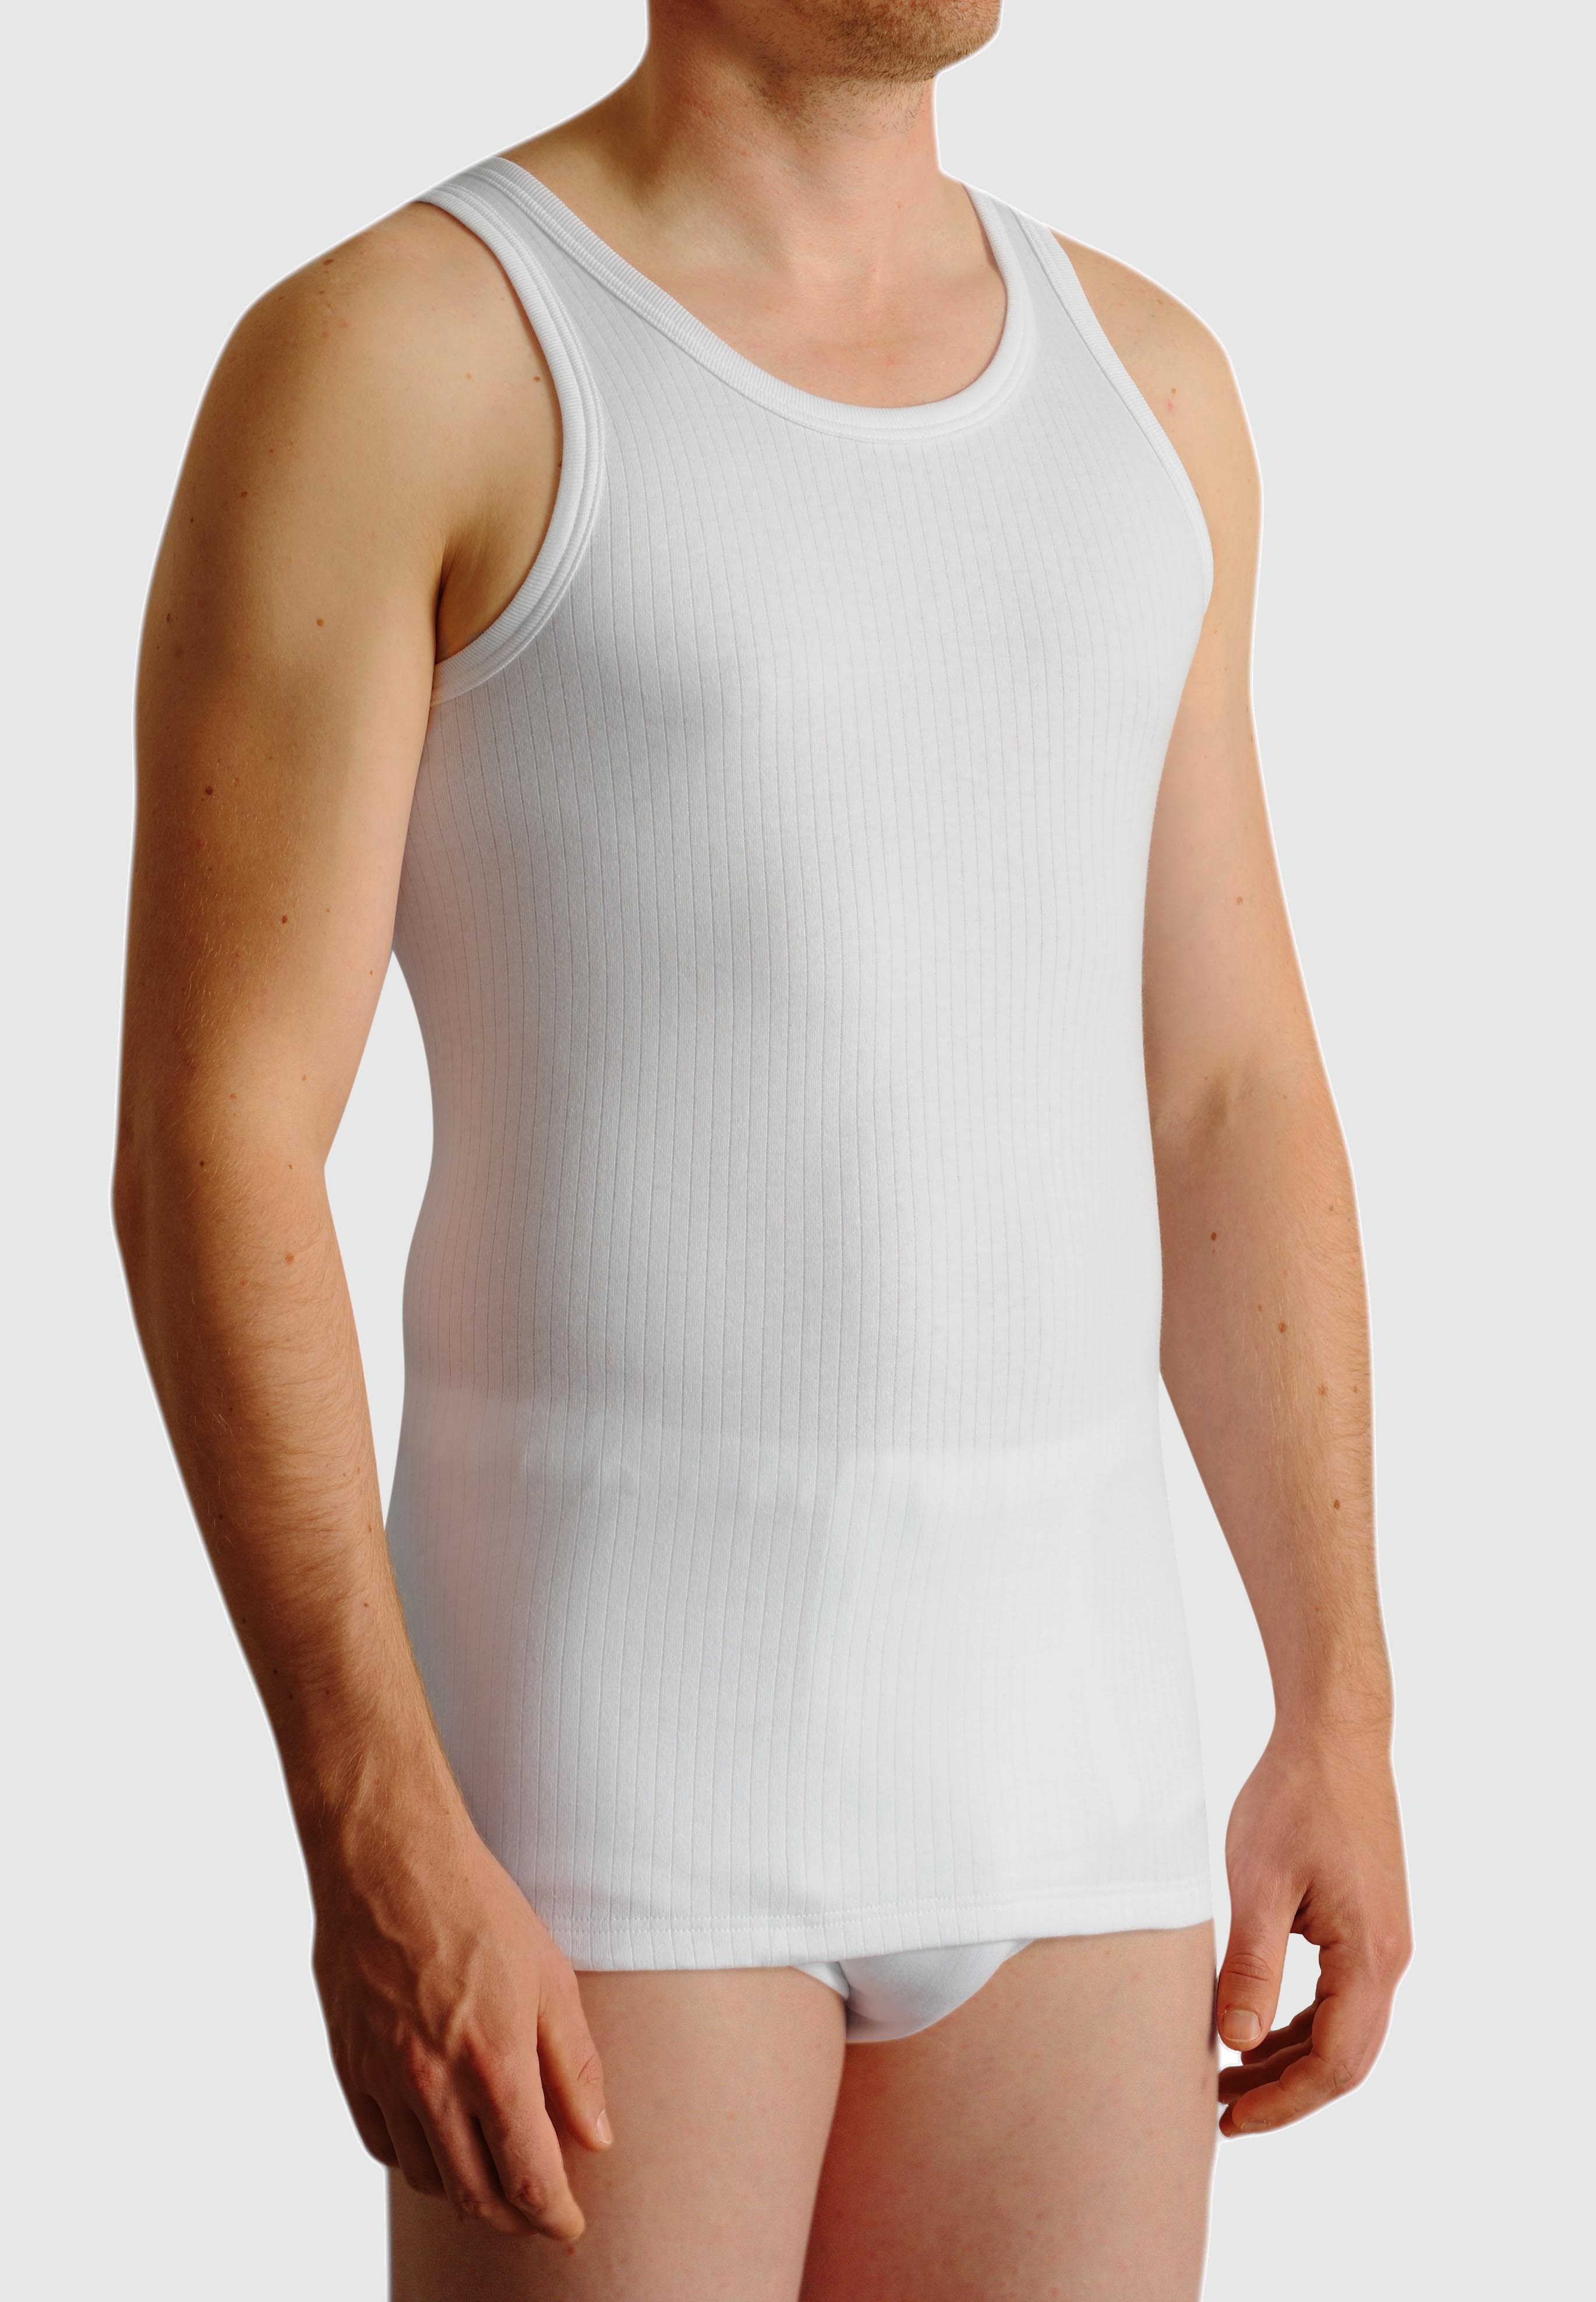 8 Herren Achsel Hemden Unterhemden 100% Cotton in  Weiss 06560 